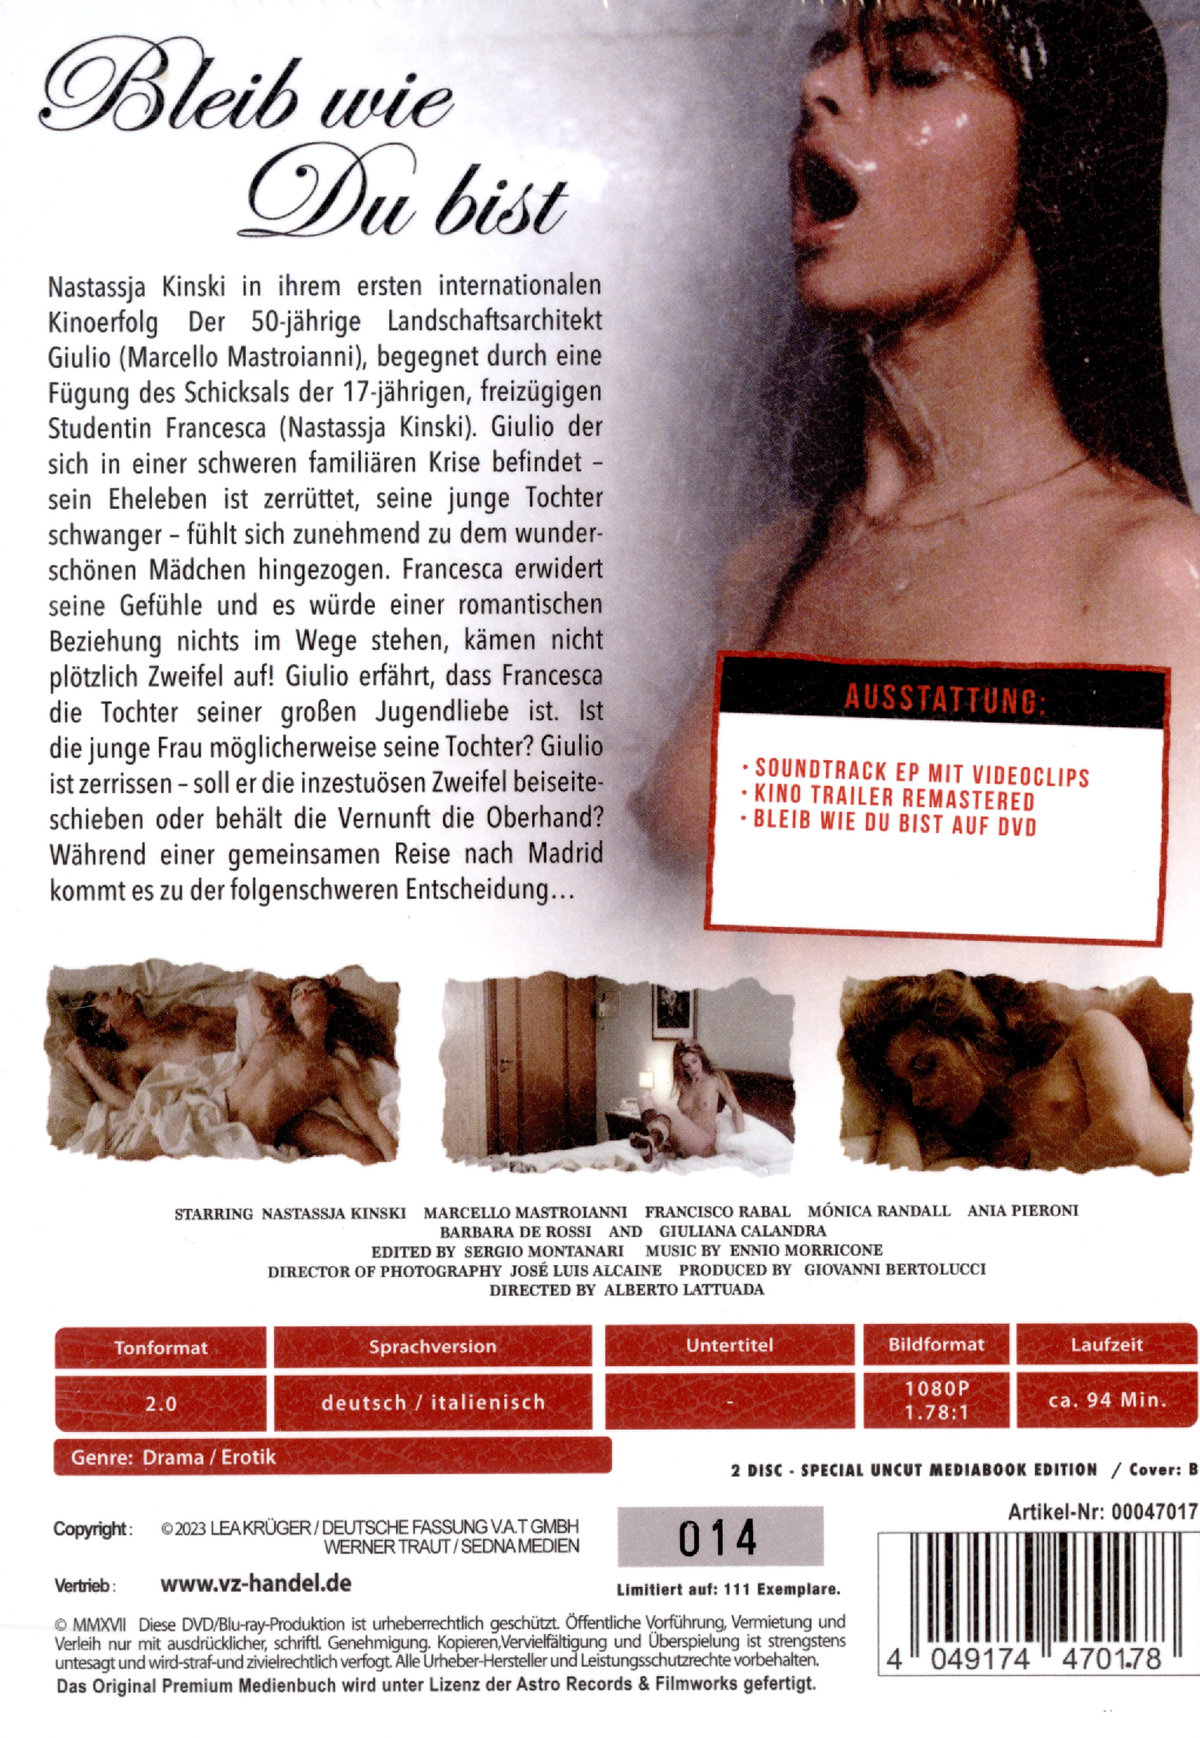 Bleib wie du bist - Cosi come sei - Uncut Mediabook Edition (DVD+blu-ray) (B)